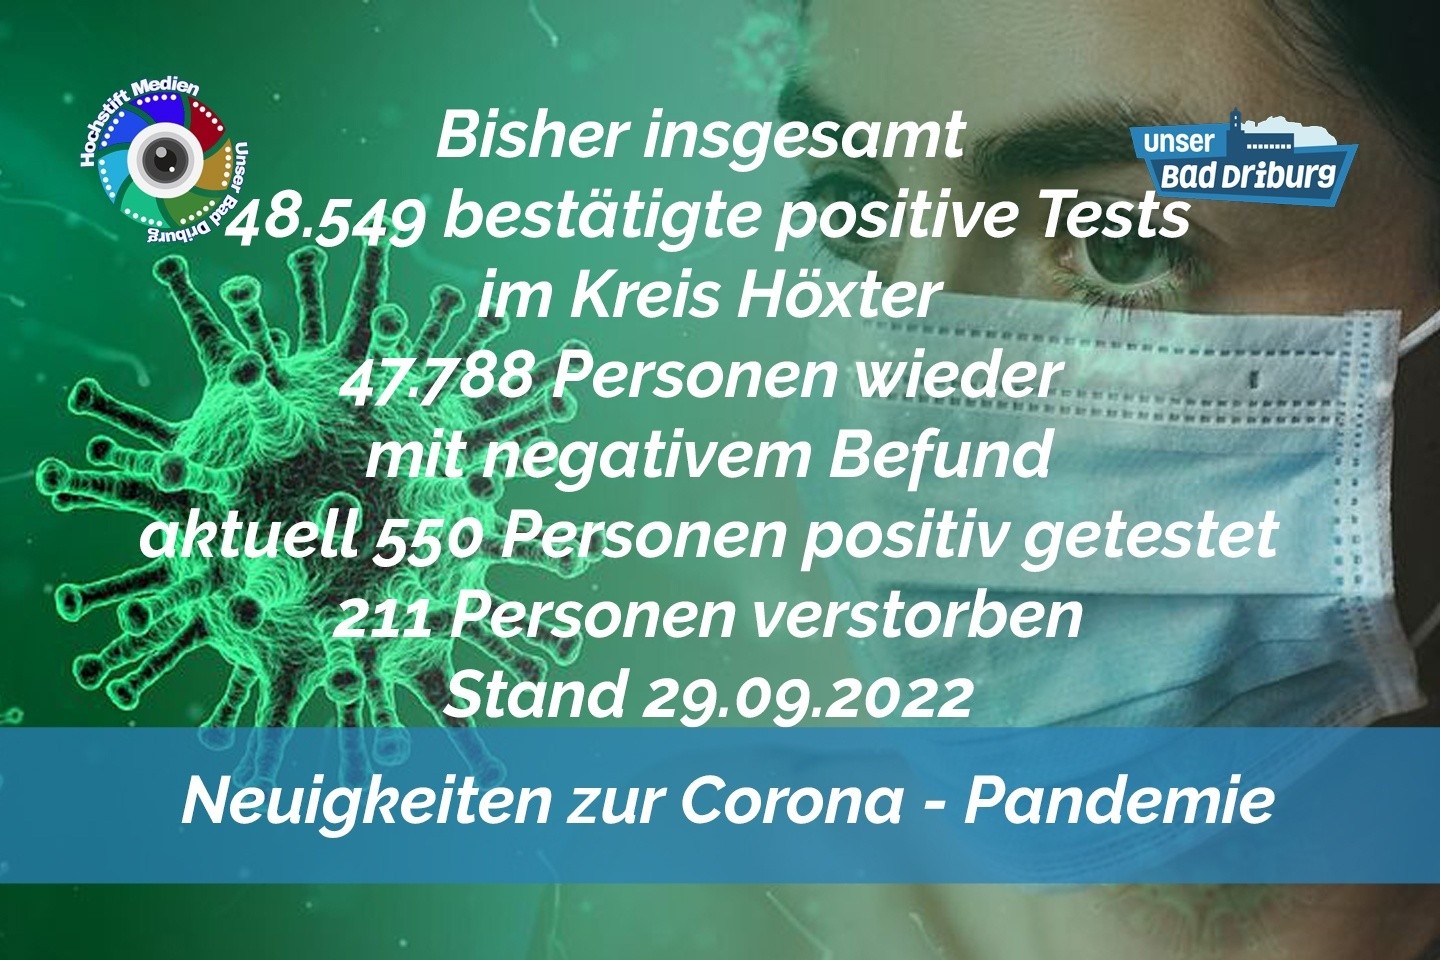 Update 29. September 2022: 119 weitere amtlich positive Tests im Kreis Höxter